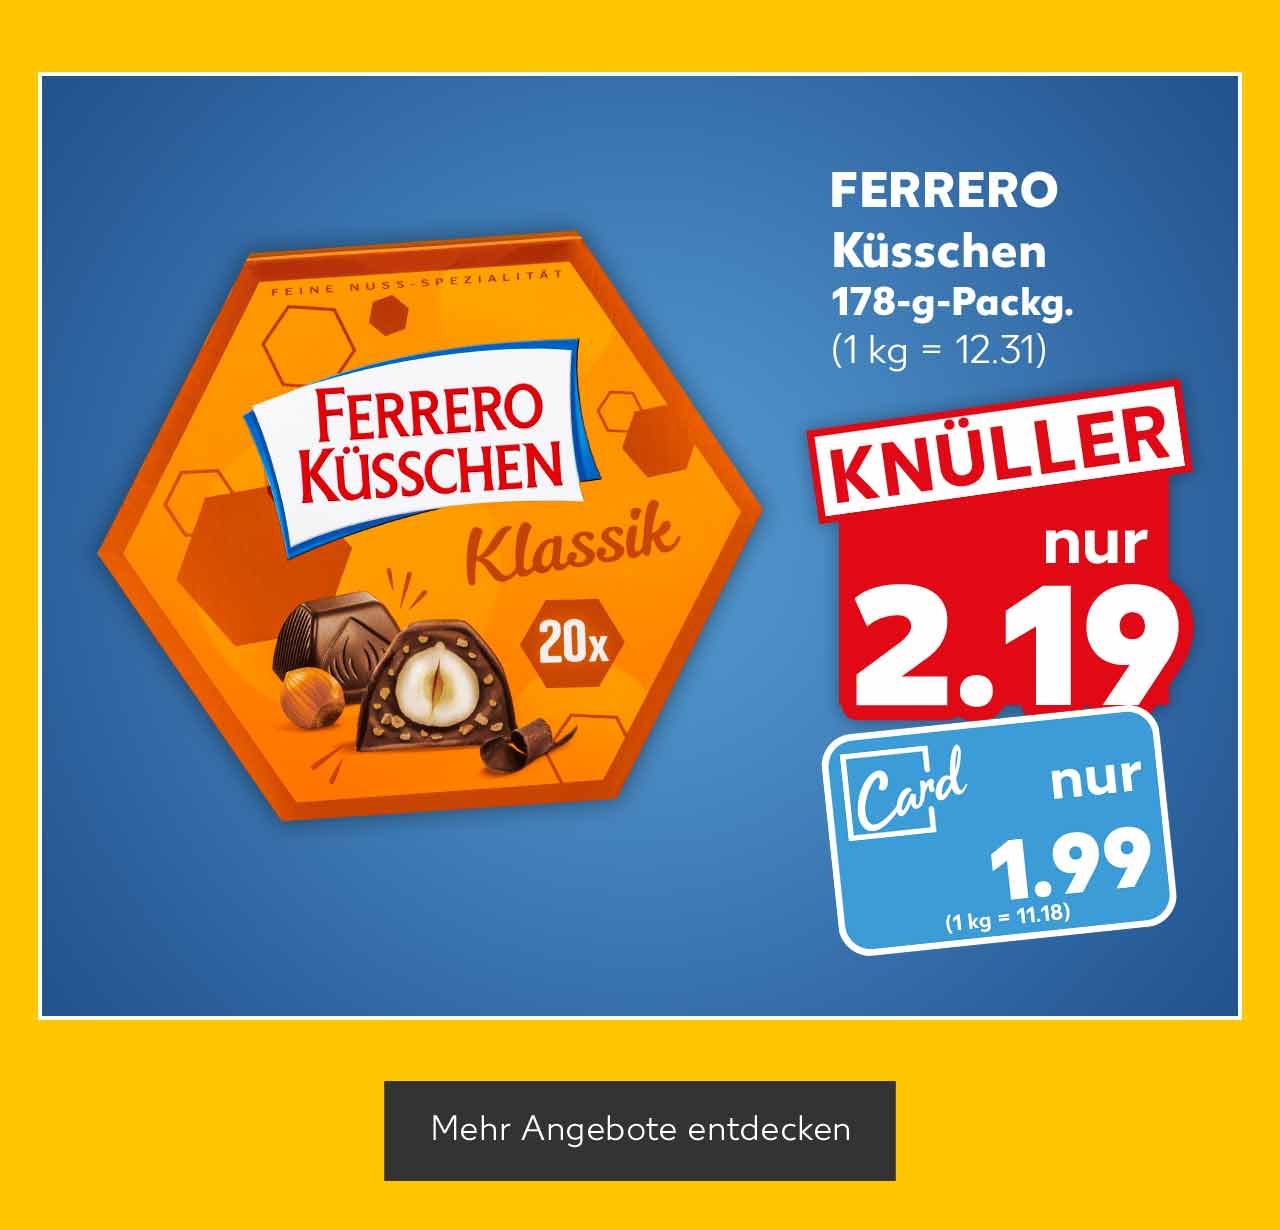 FERRERO Küsschen, 178-g-Packg. für 2.19 Euro (1 kg= 12.31); Kaufland Card Preis 1.99 Euro (1 kg = 11.18); Button: Mehr Angebote entdecken